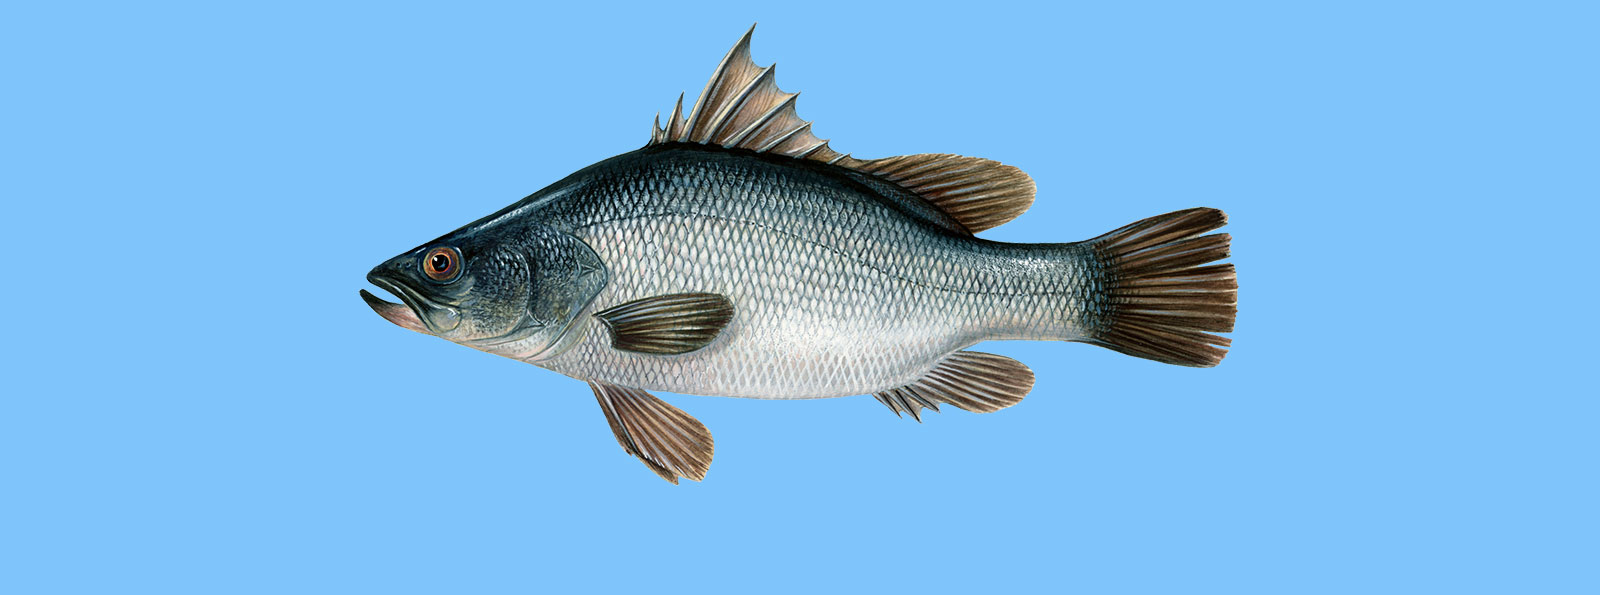 Nilbarsch, Viktoriabarsch - Der WWF Fischratgeber